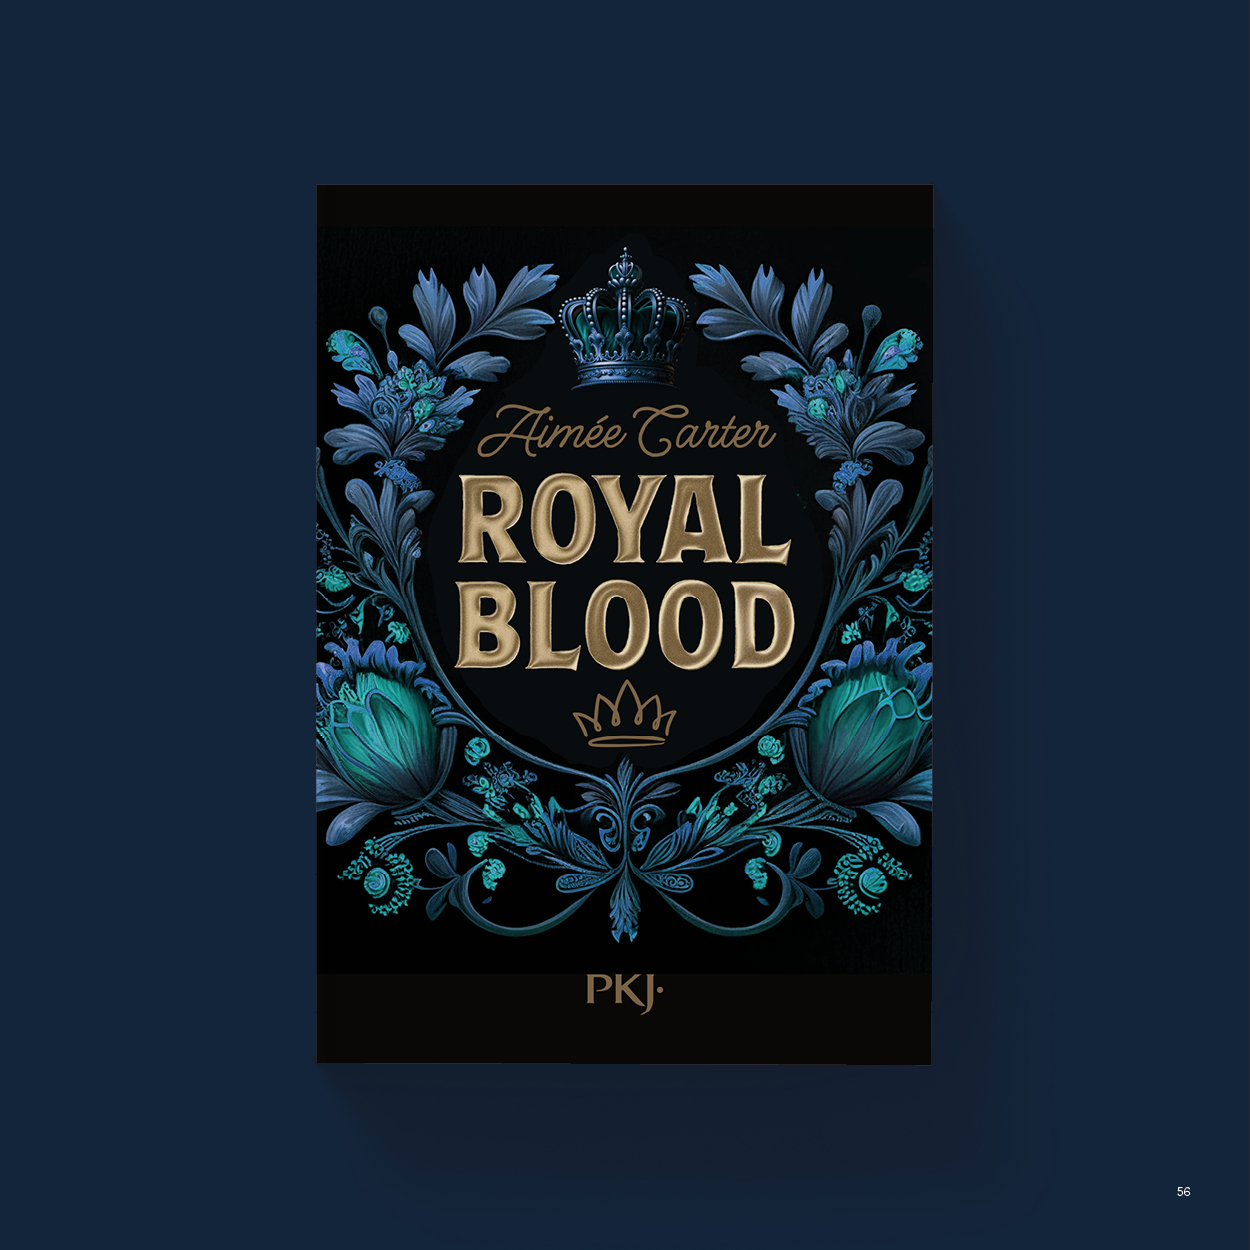 Vue_Royal_blood_56